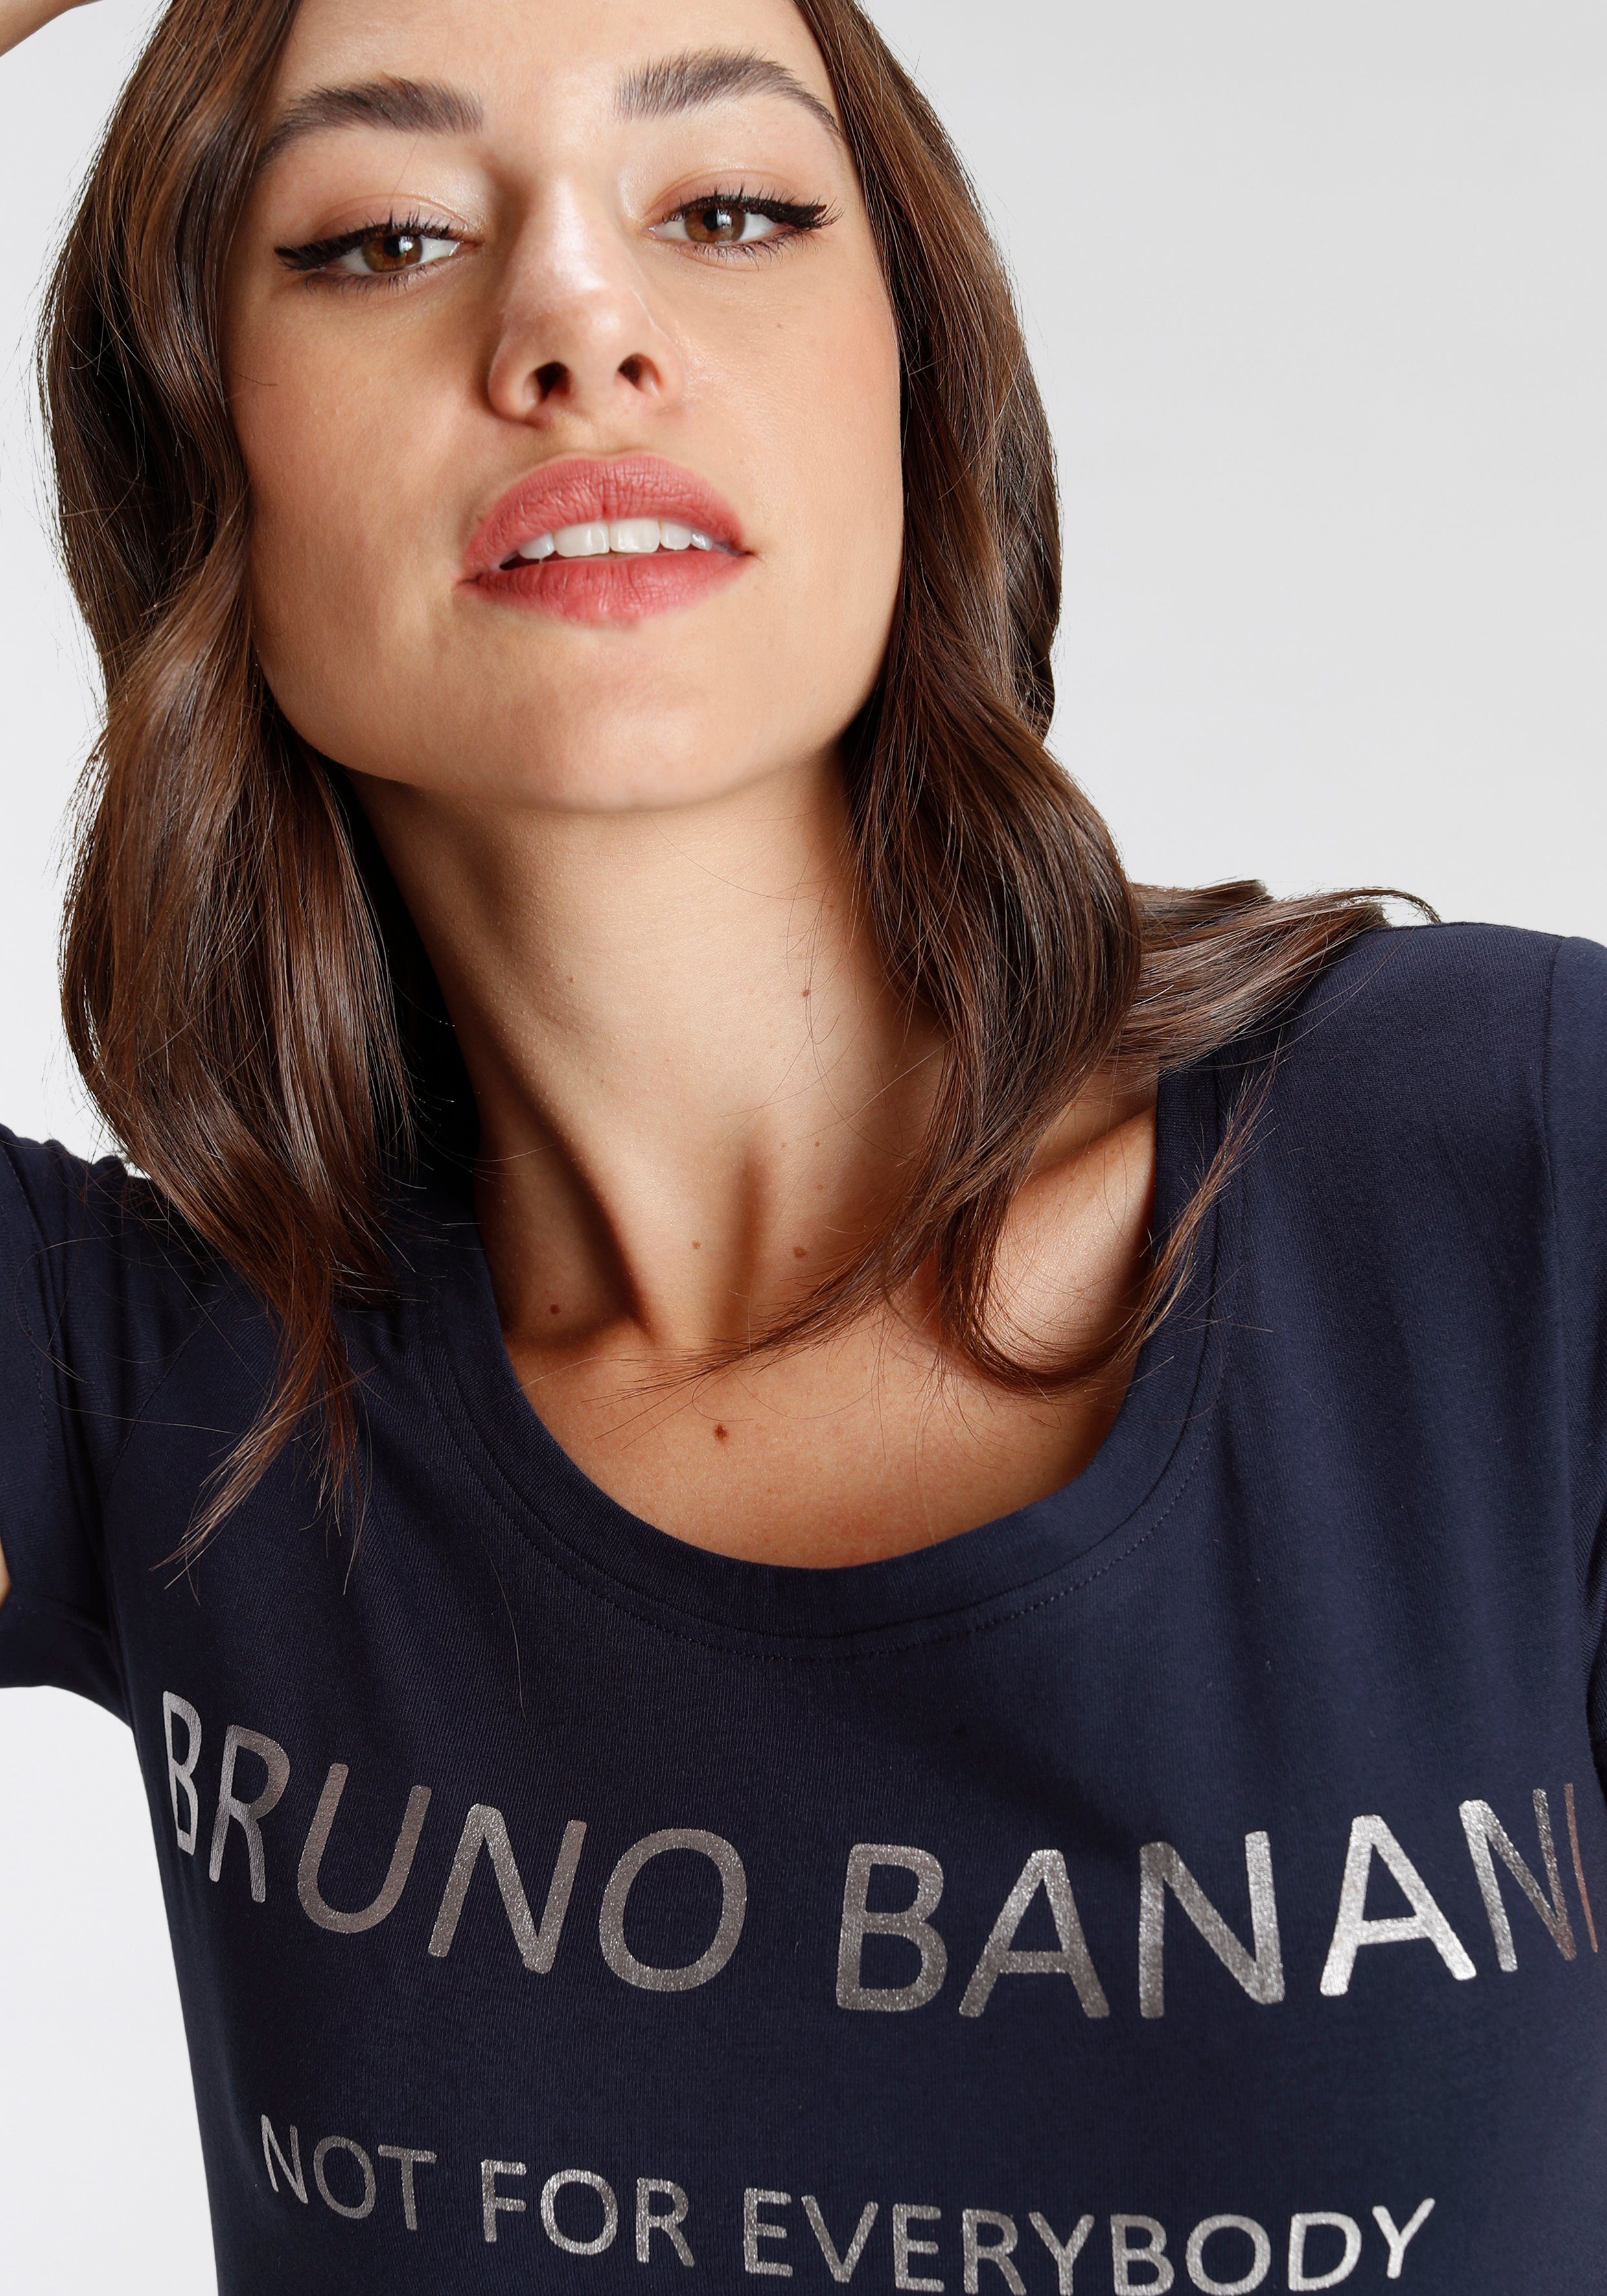 goldfarbenem NEUE marine T-Shirt KOLLEKTION Logodruck mit Banani Bruno